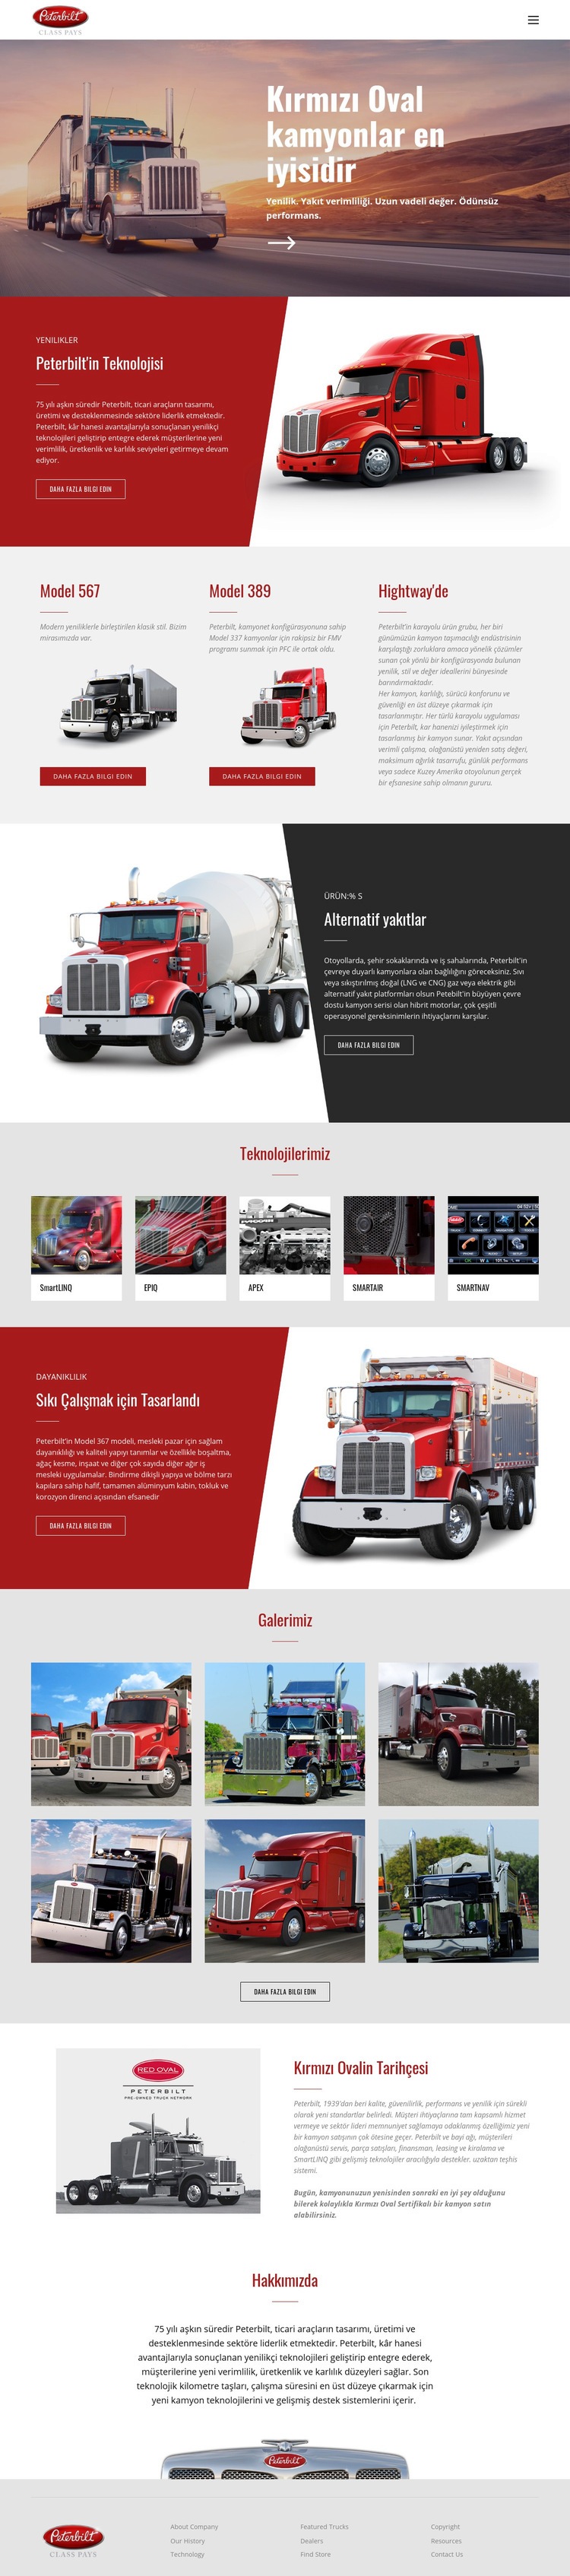 Kırmızı oval kamyon taşımacılığı Web sitesi tasarımı